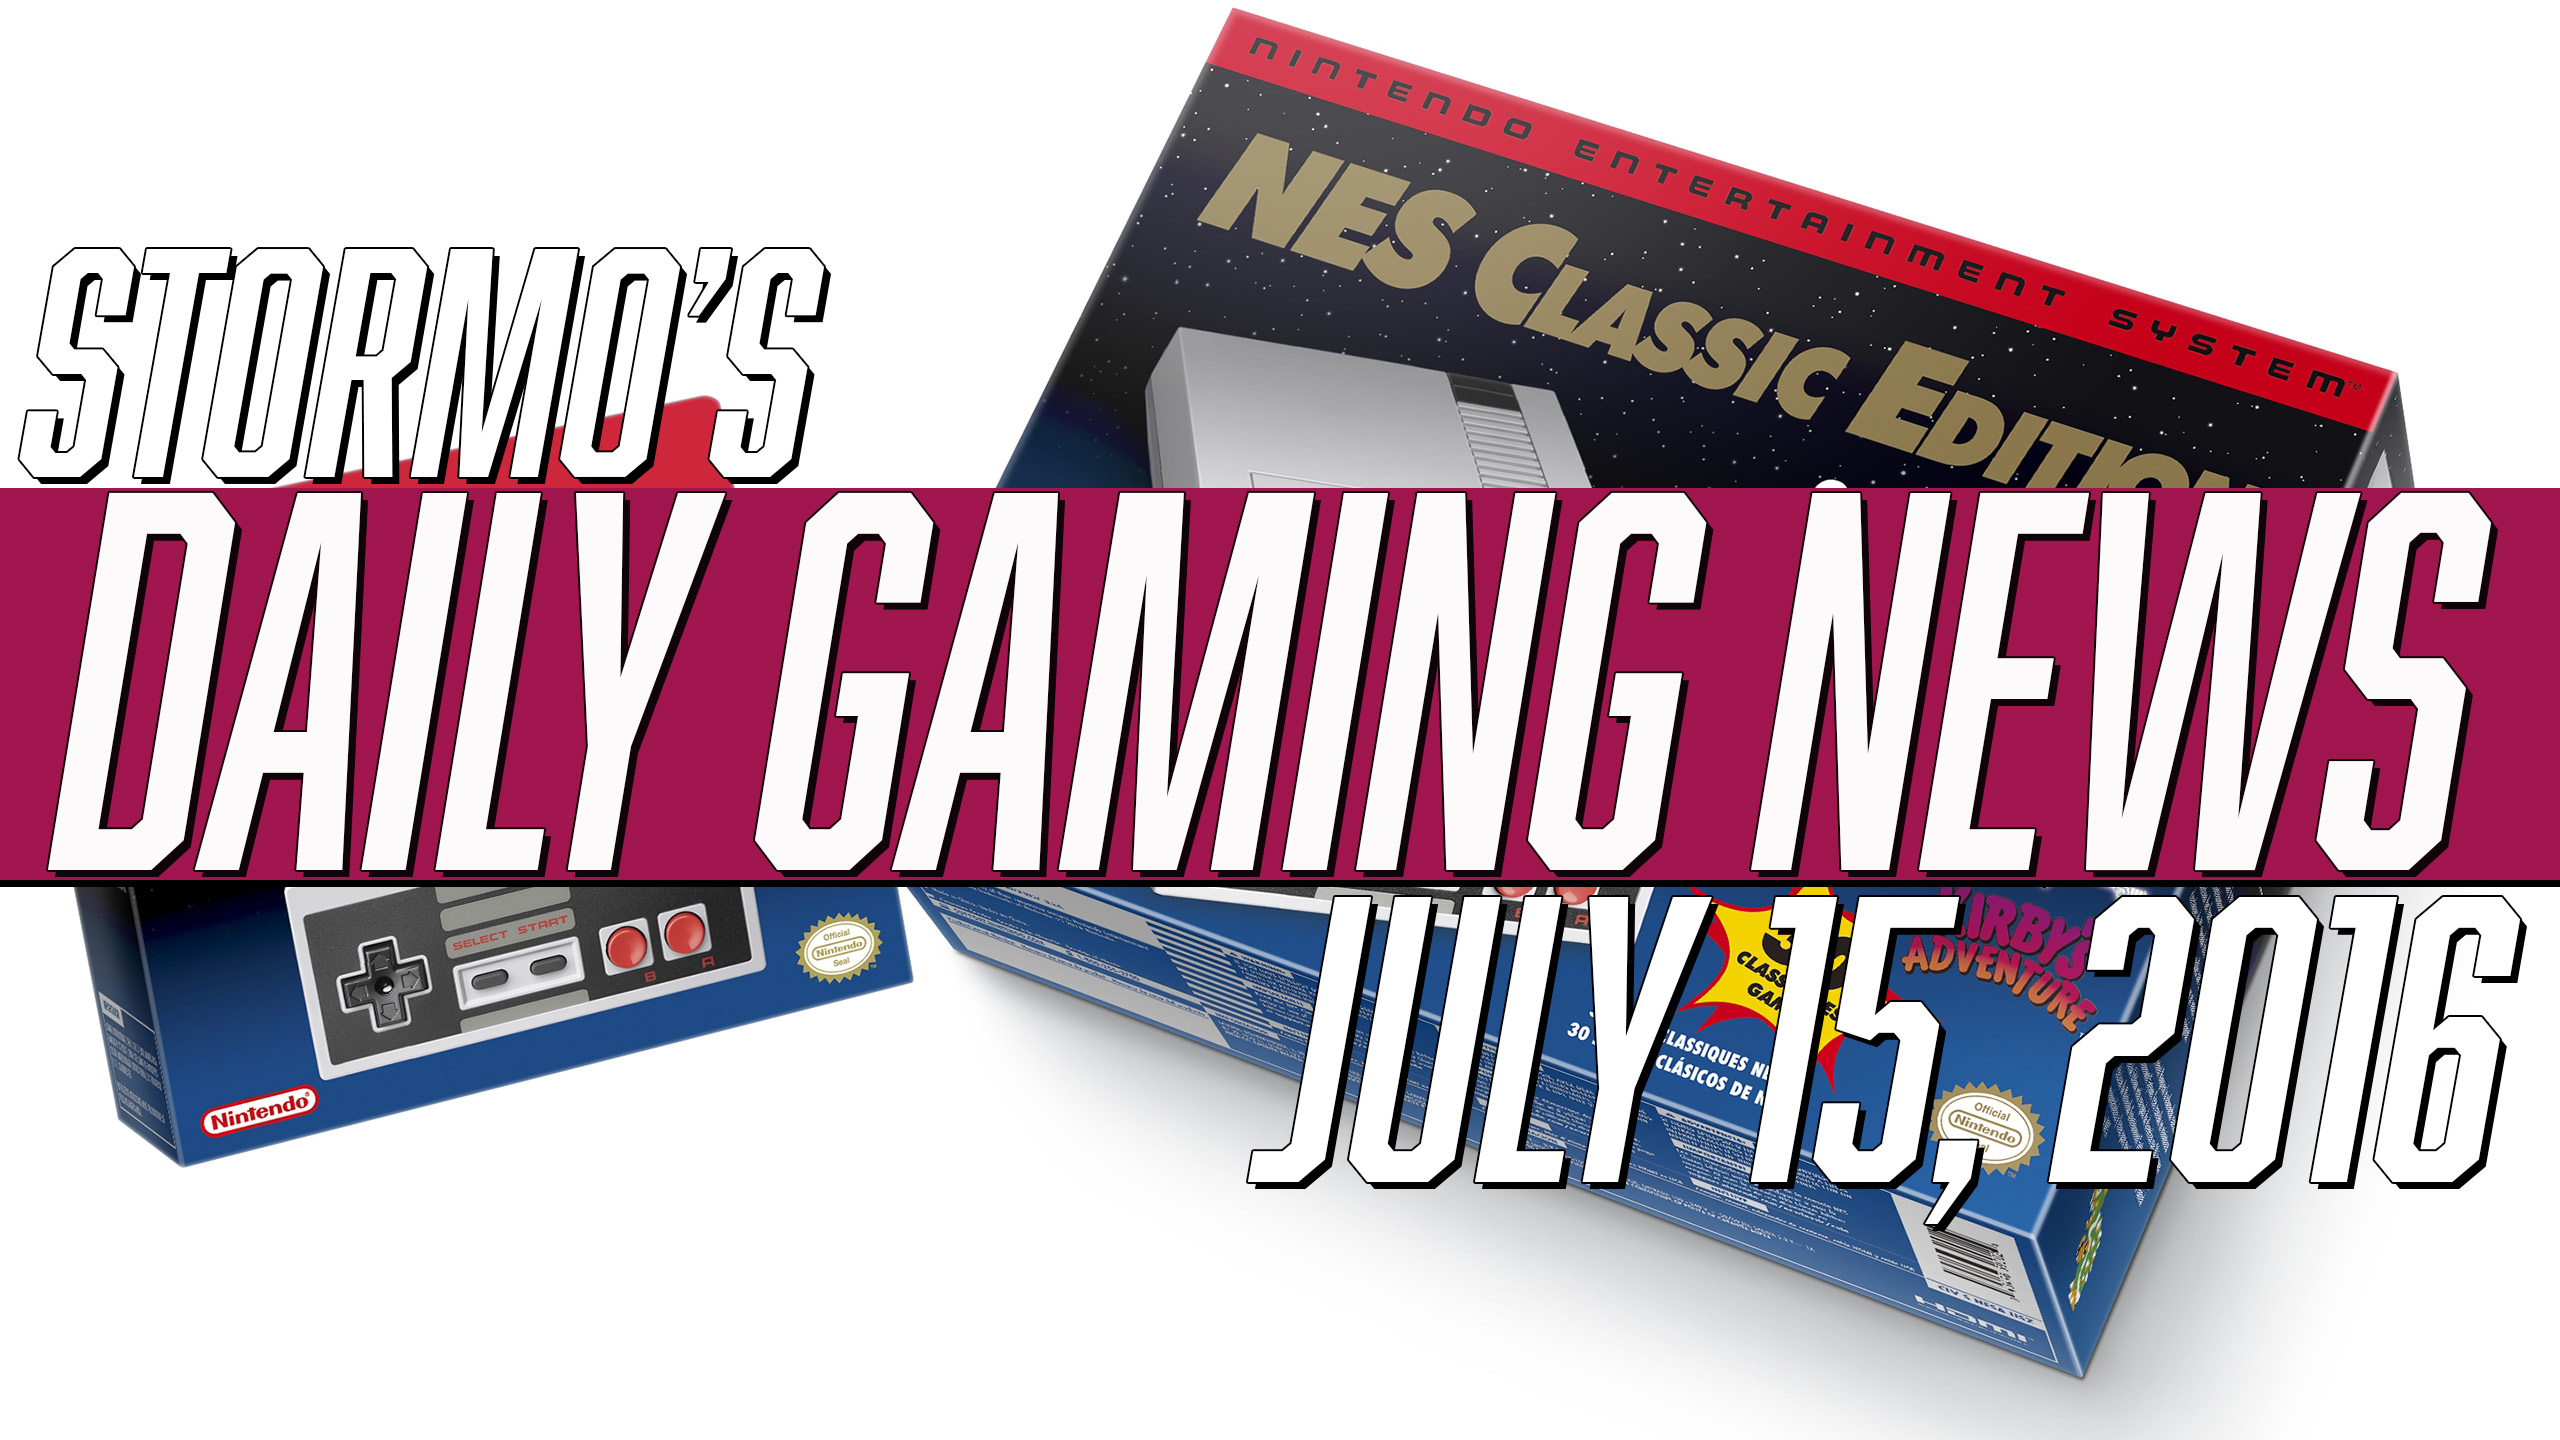 Daily Gaming News - July 15, 2016